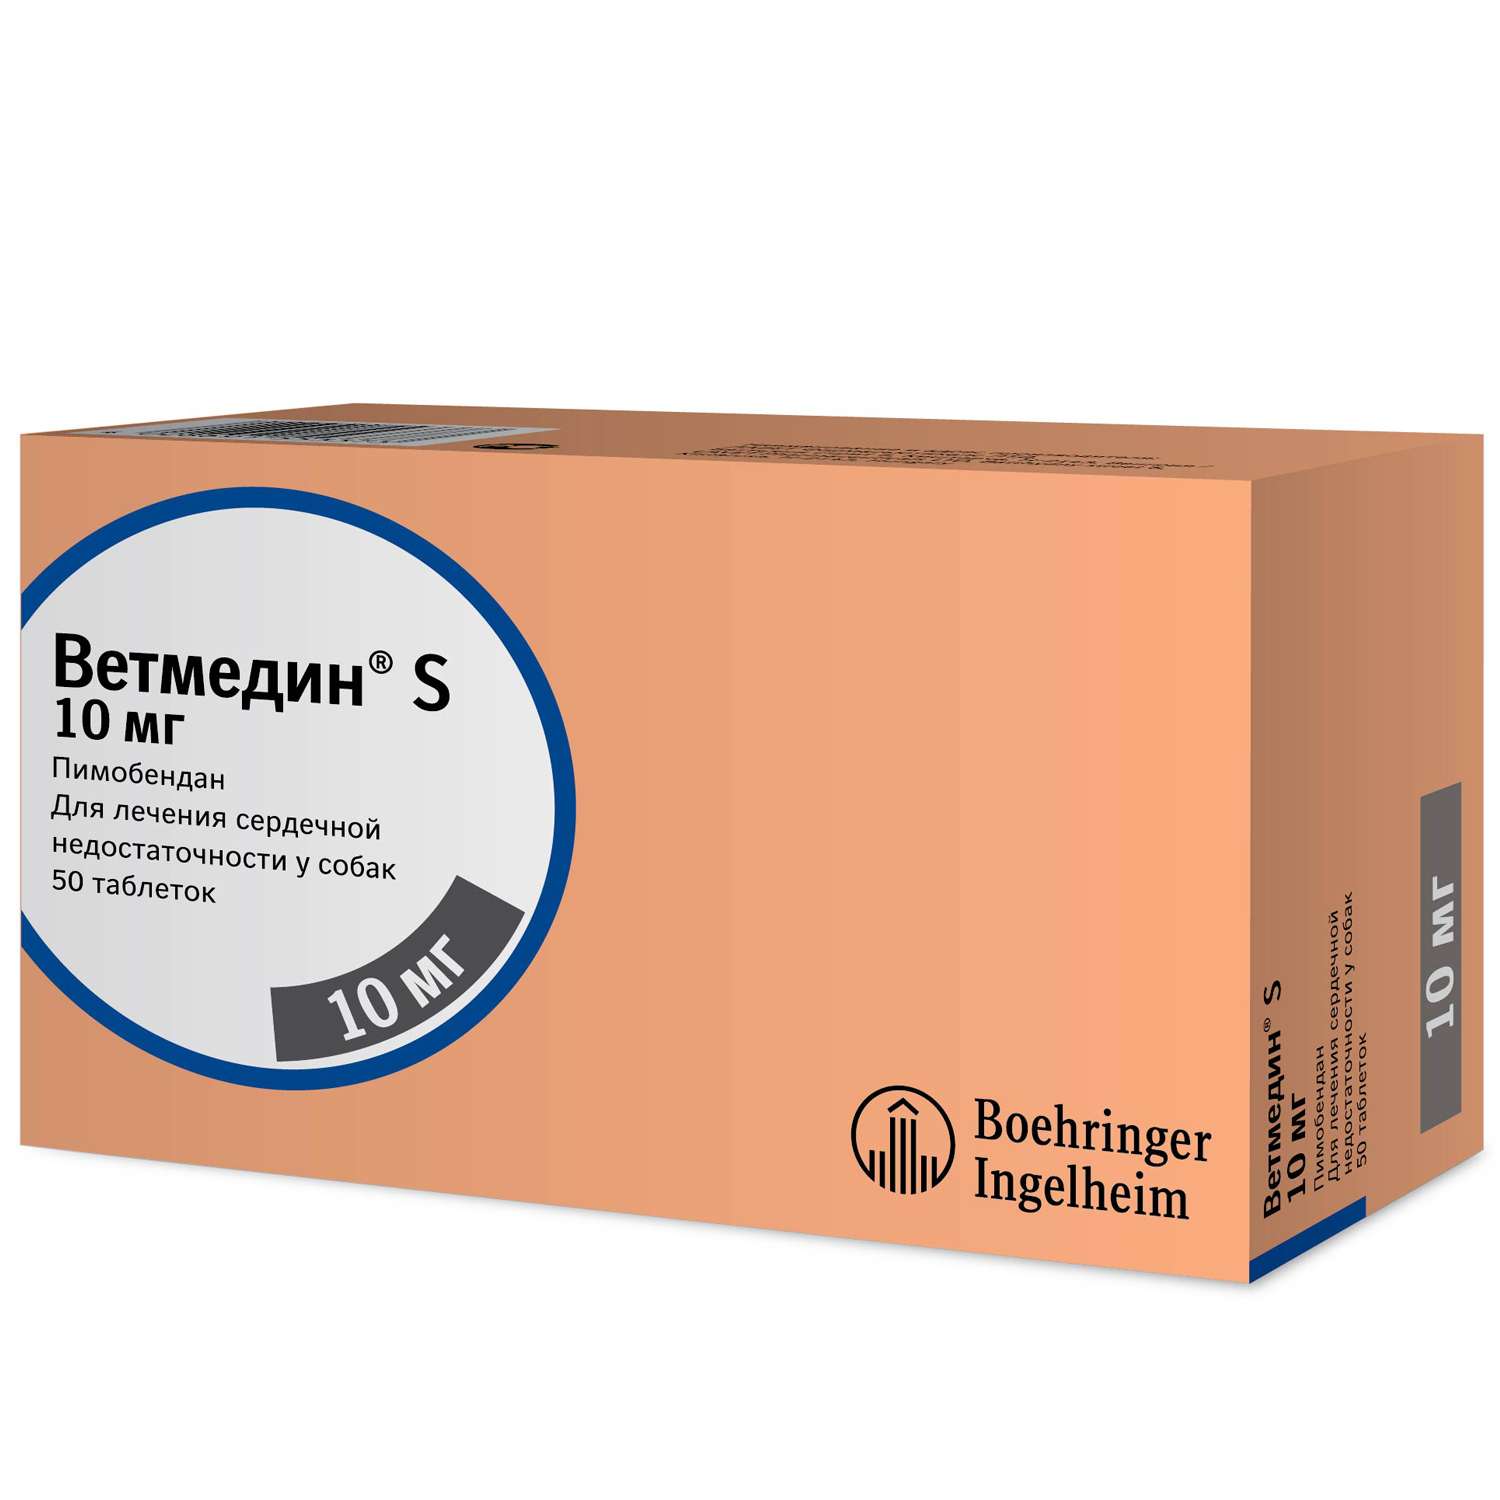 Препарат для лечения сердечно-сосудистых заболеваний у собак Boehringer Ingelheim Ветмедин 10.0мг 50таблеток - фото 1